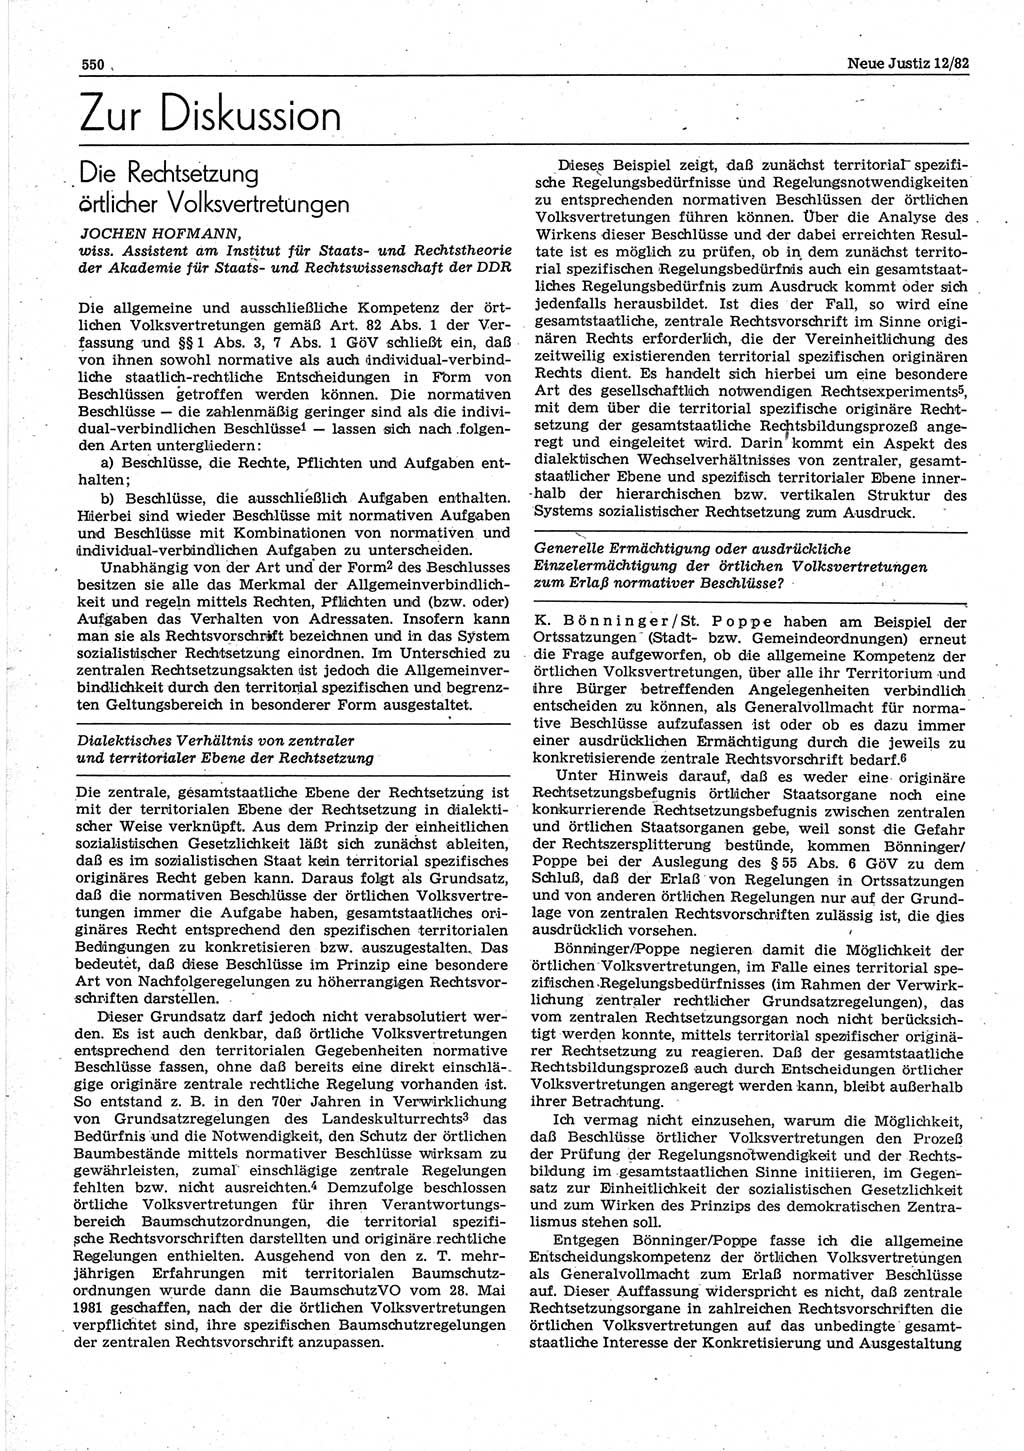 Neue Justiz (NJ), Zeitschrift für sozialistisches Recht und Gesetzlichkeit [Deutsche Demokratische Republik (DDR)], 36. Jahrgang 1982, Seite 550 (NJ DDR 1982, S. 550)